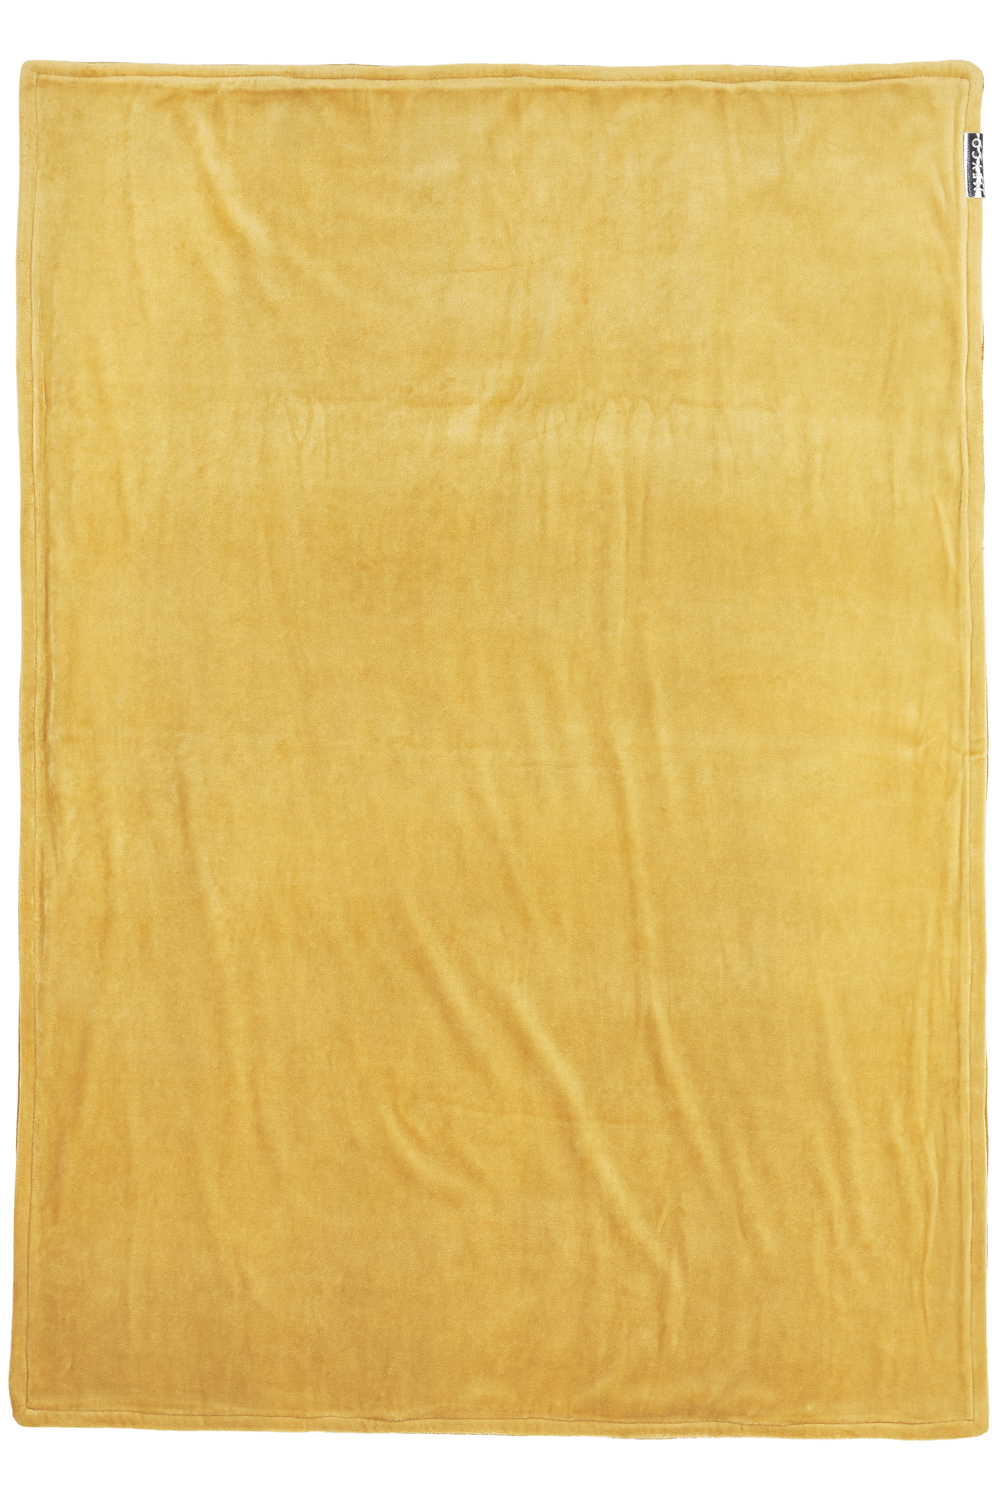 Babydecke groß Knit Basic velvet - honey gold - 100x150cm